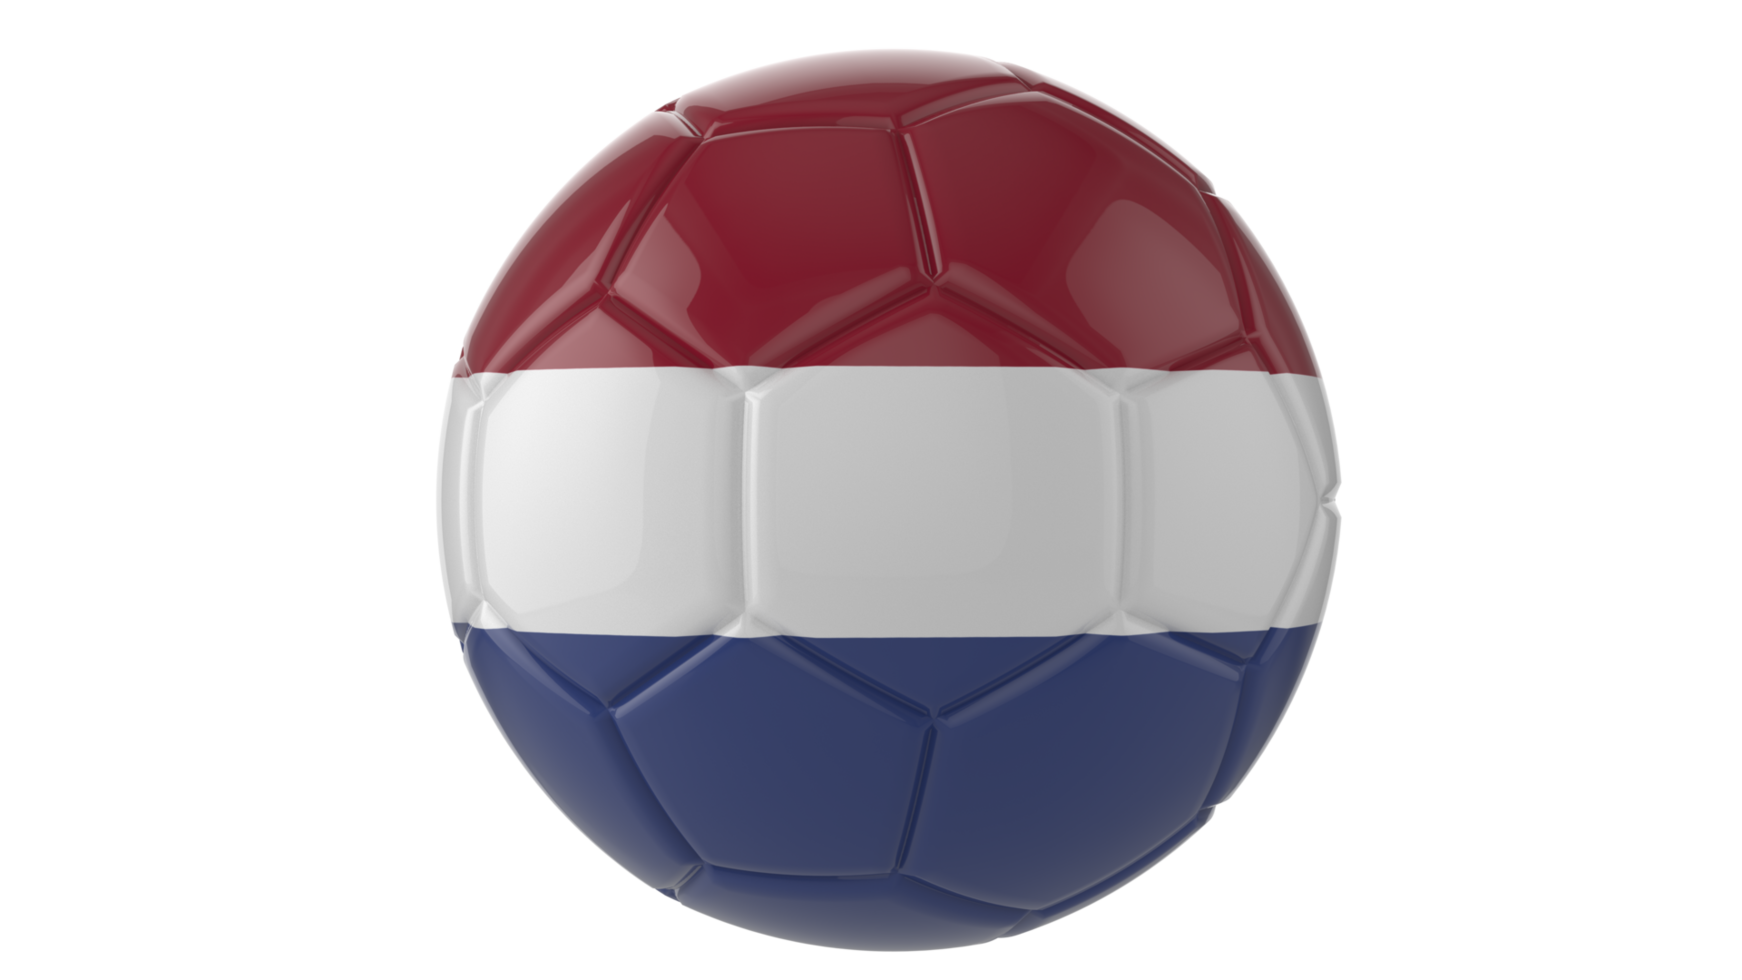 3d bola de futebol realista com a bandeira da holanda isolada em fundo png transparente